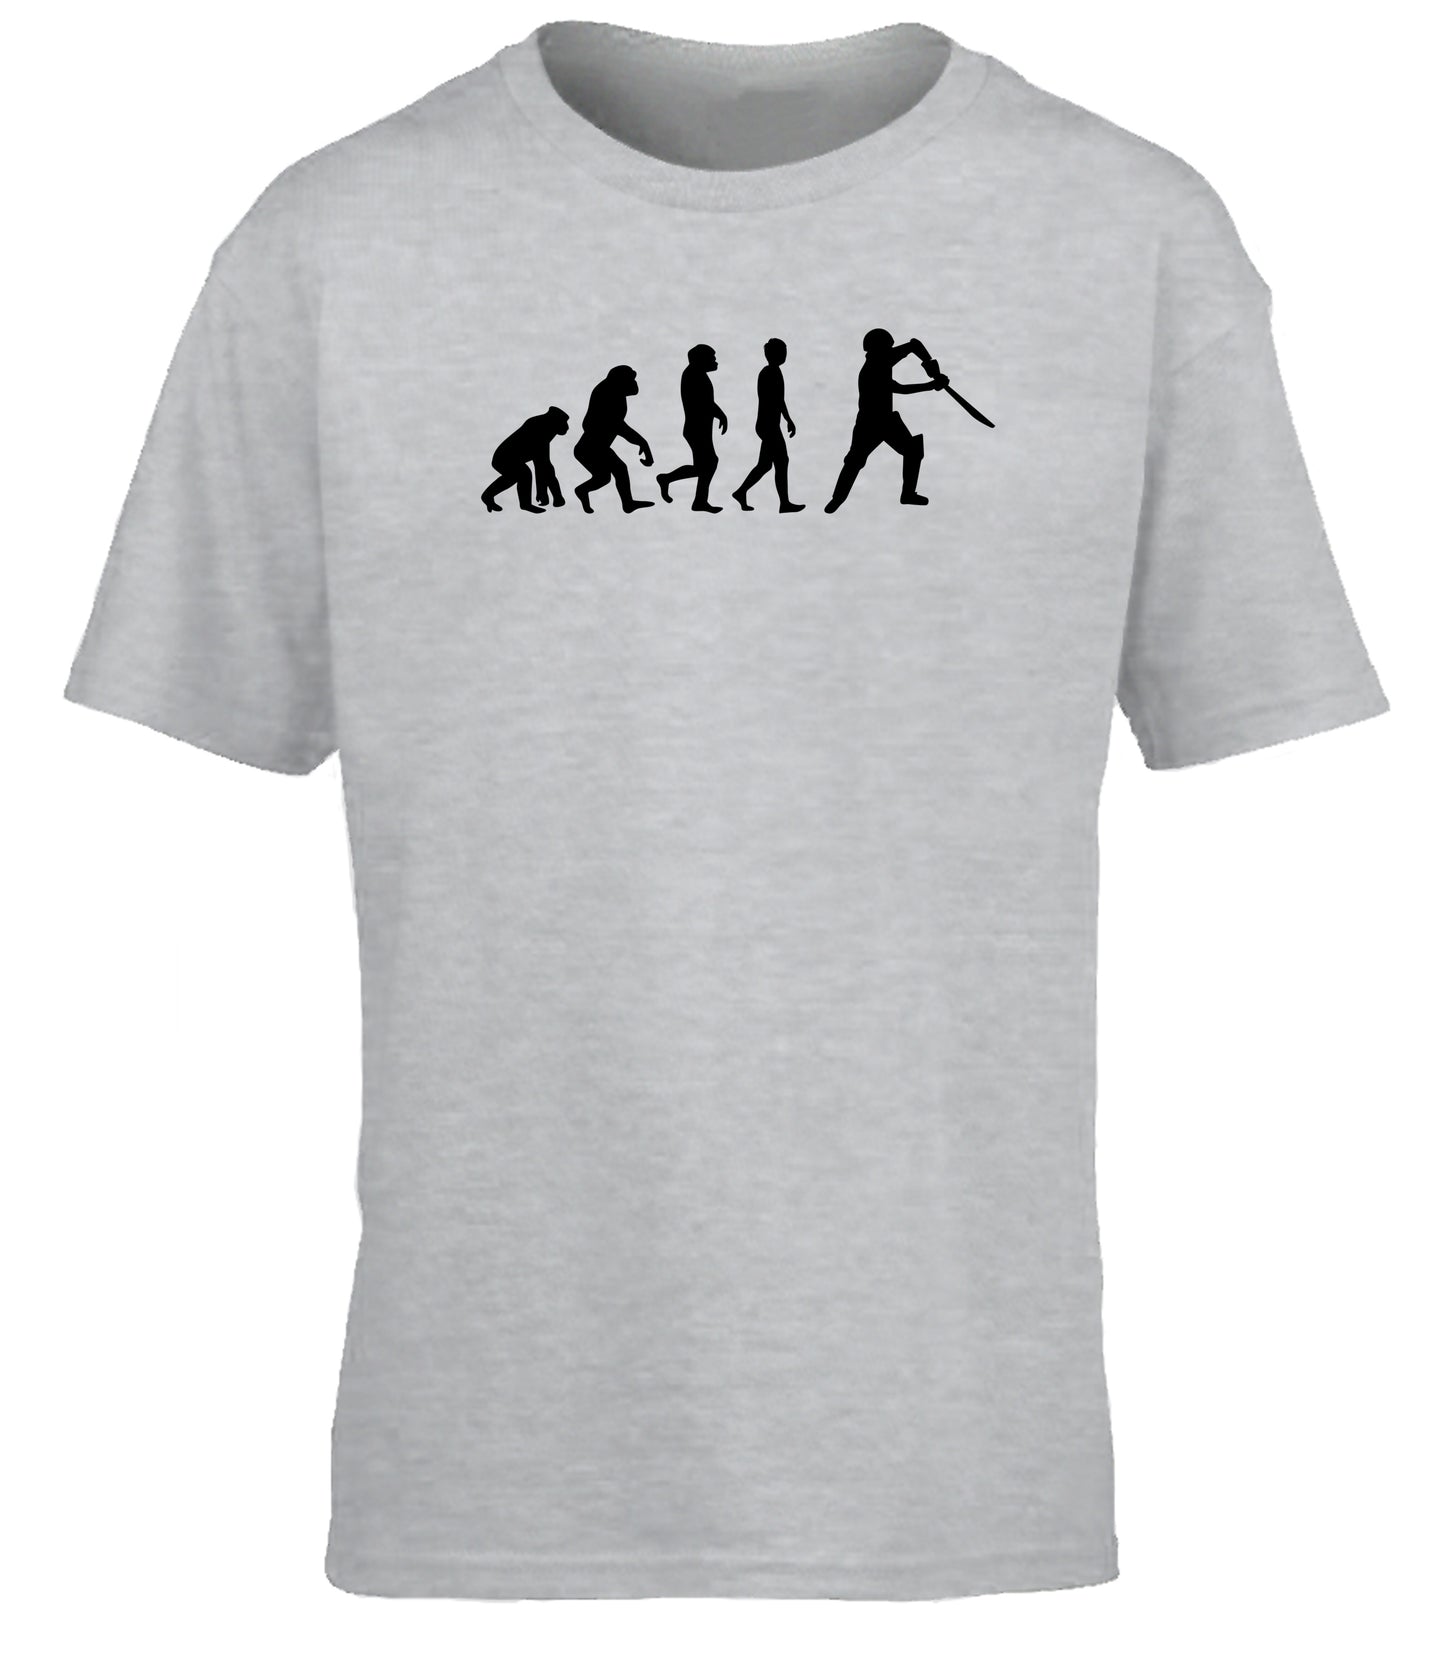 Cricketer Evolution children's T-shirt